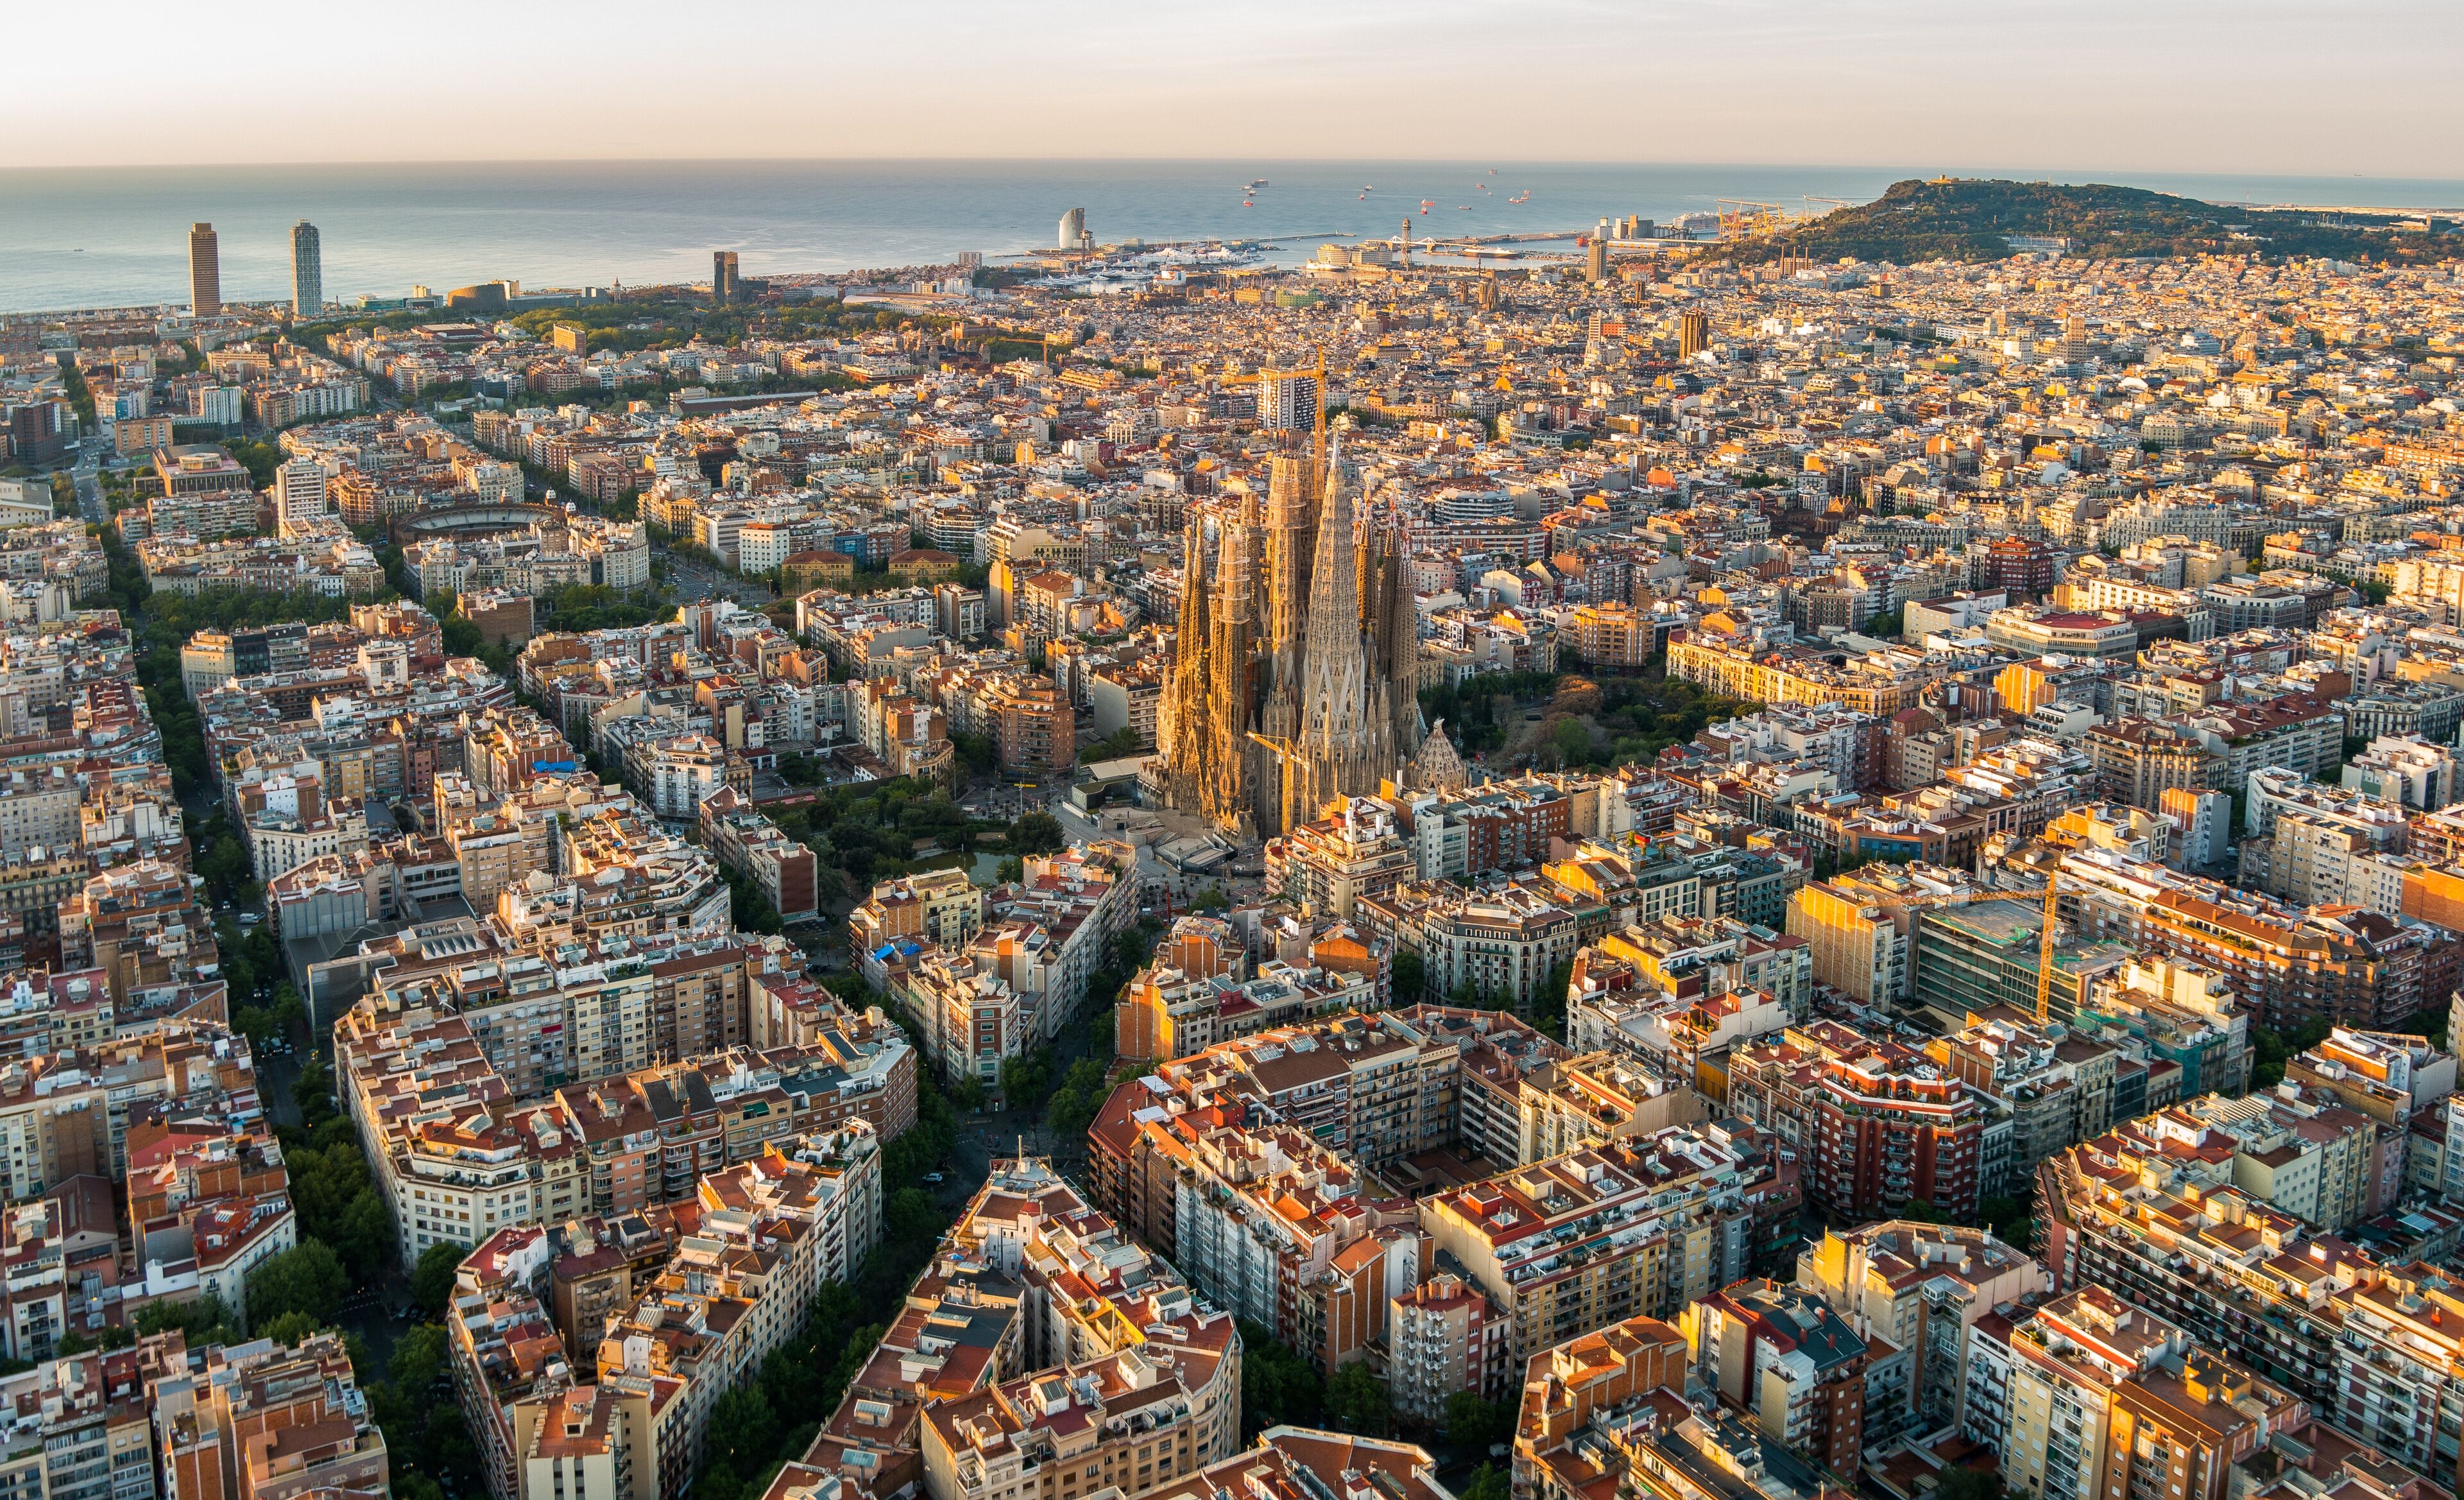 Sagrada Familia et horizon de Barcelone au lever du soleil, vue aérienne. Catalogne, Espagne